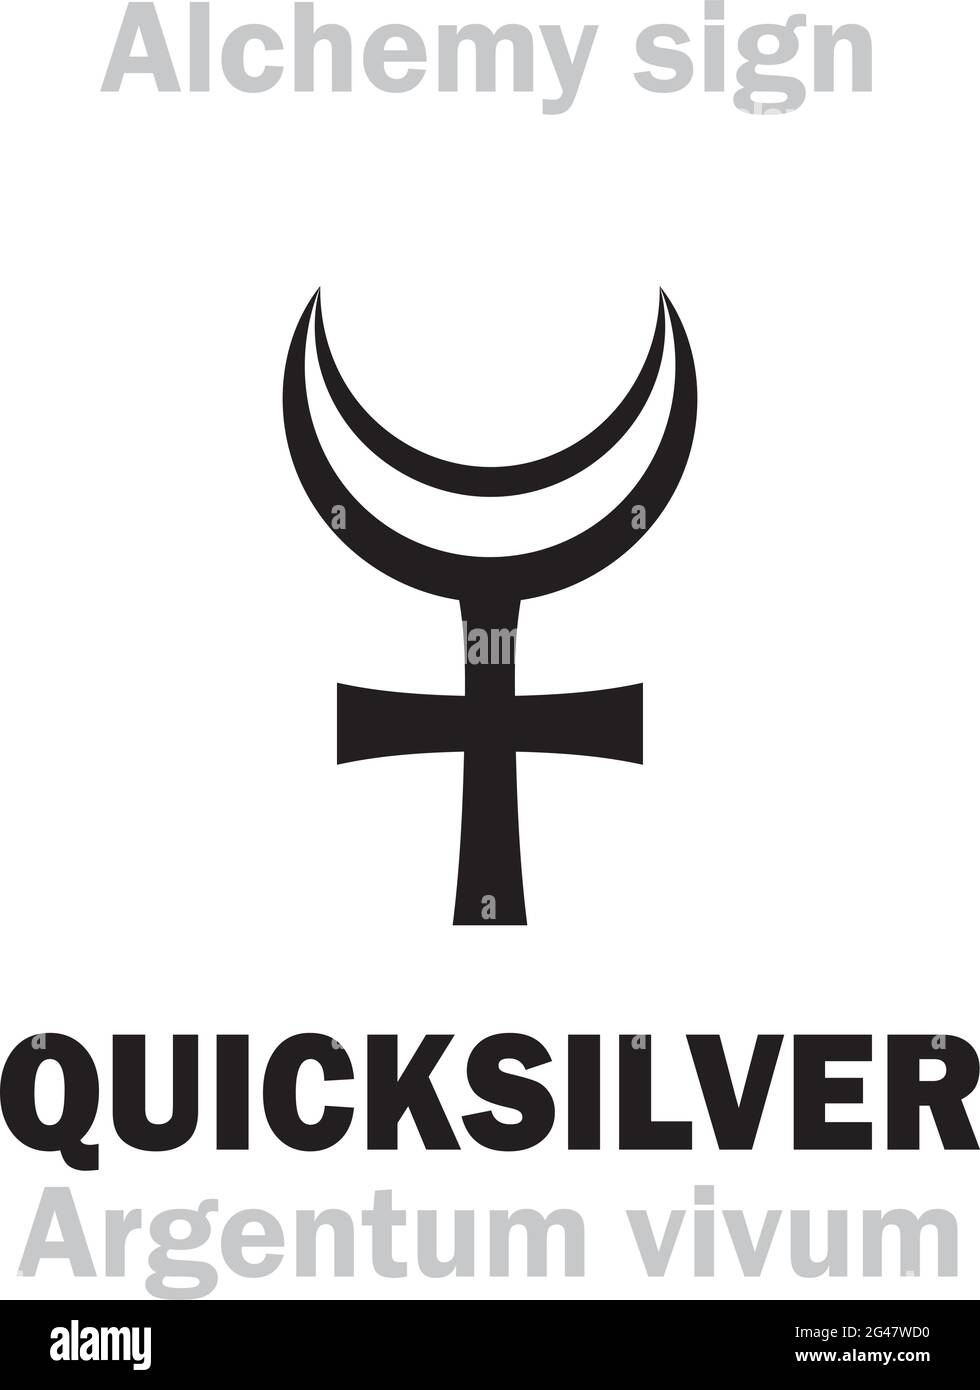 Quicksilver, Little Alchemy Wiki